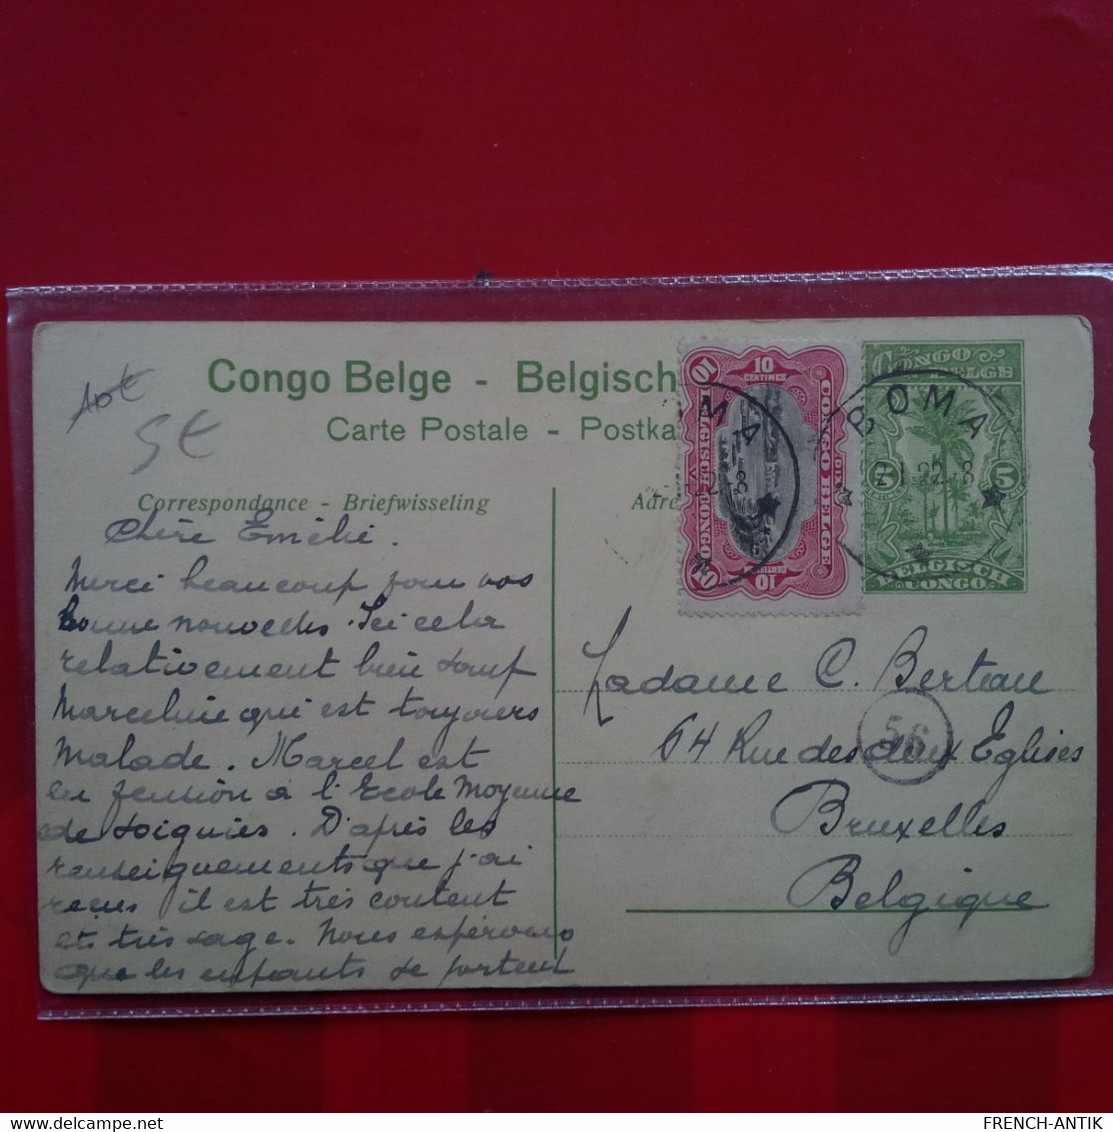 CONGO BELGE LES RAPIDES DU CONGO A SA SORTIE DU STANLEY POOL - Belgian Congo